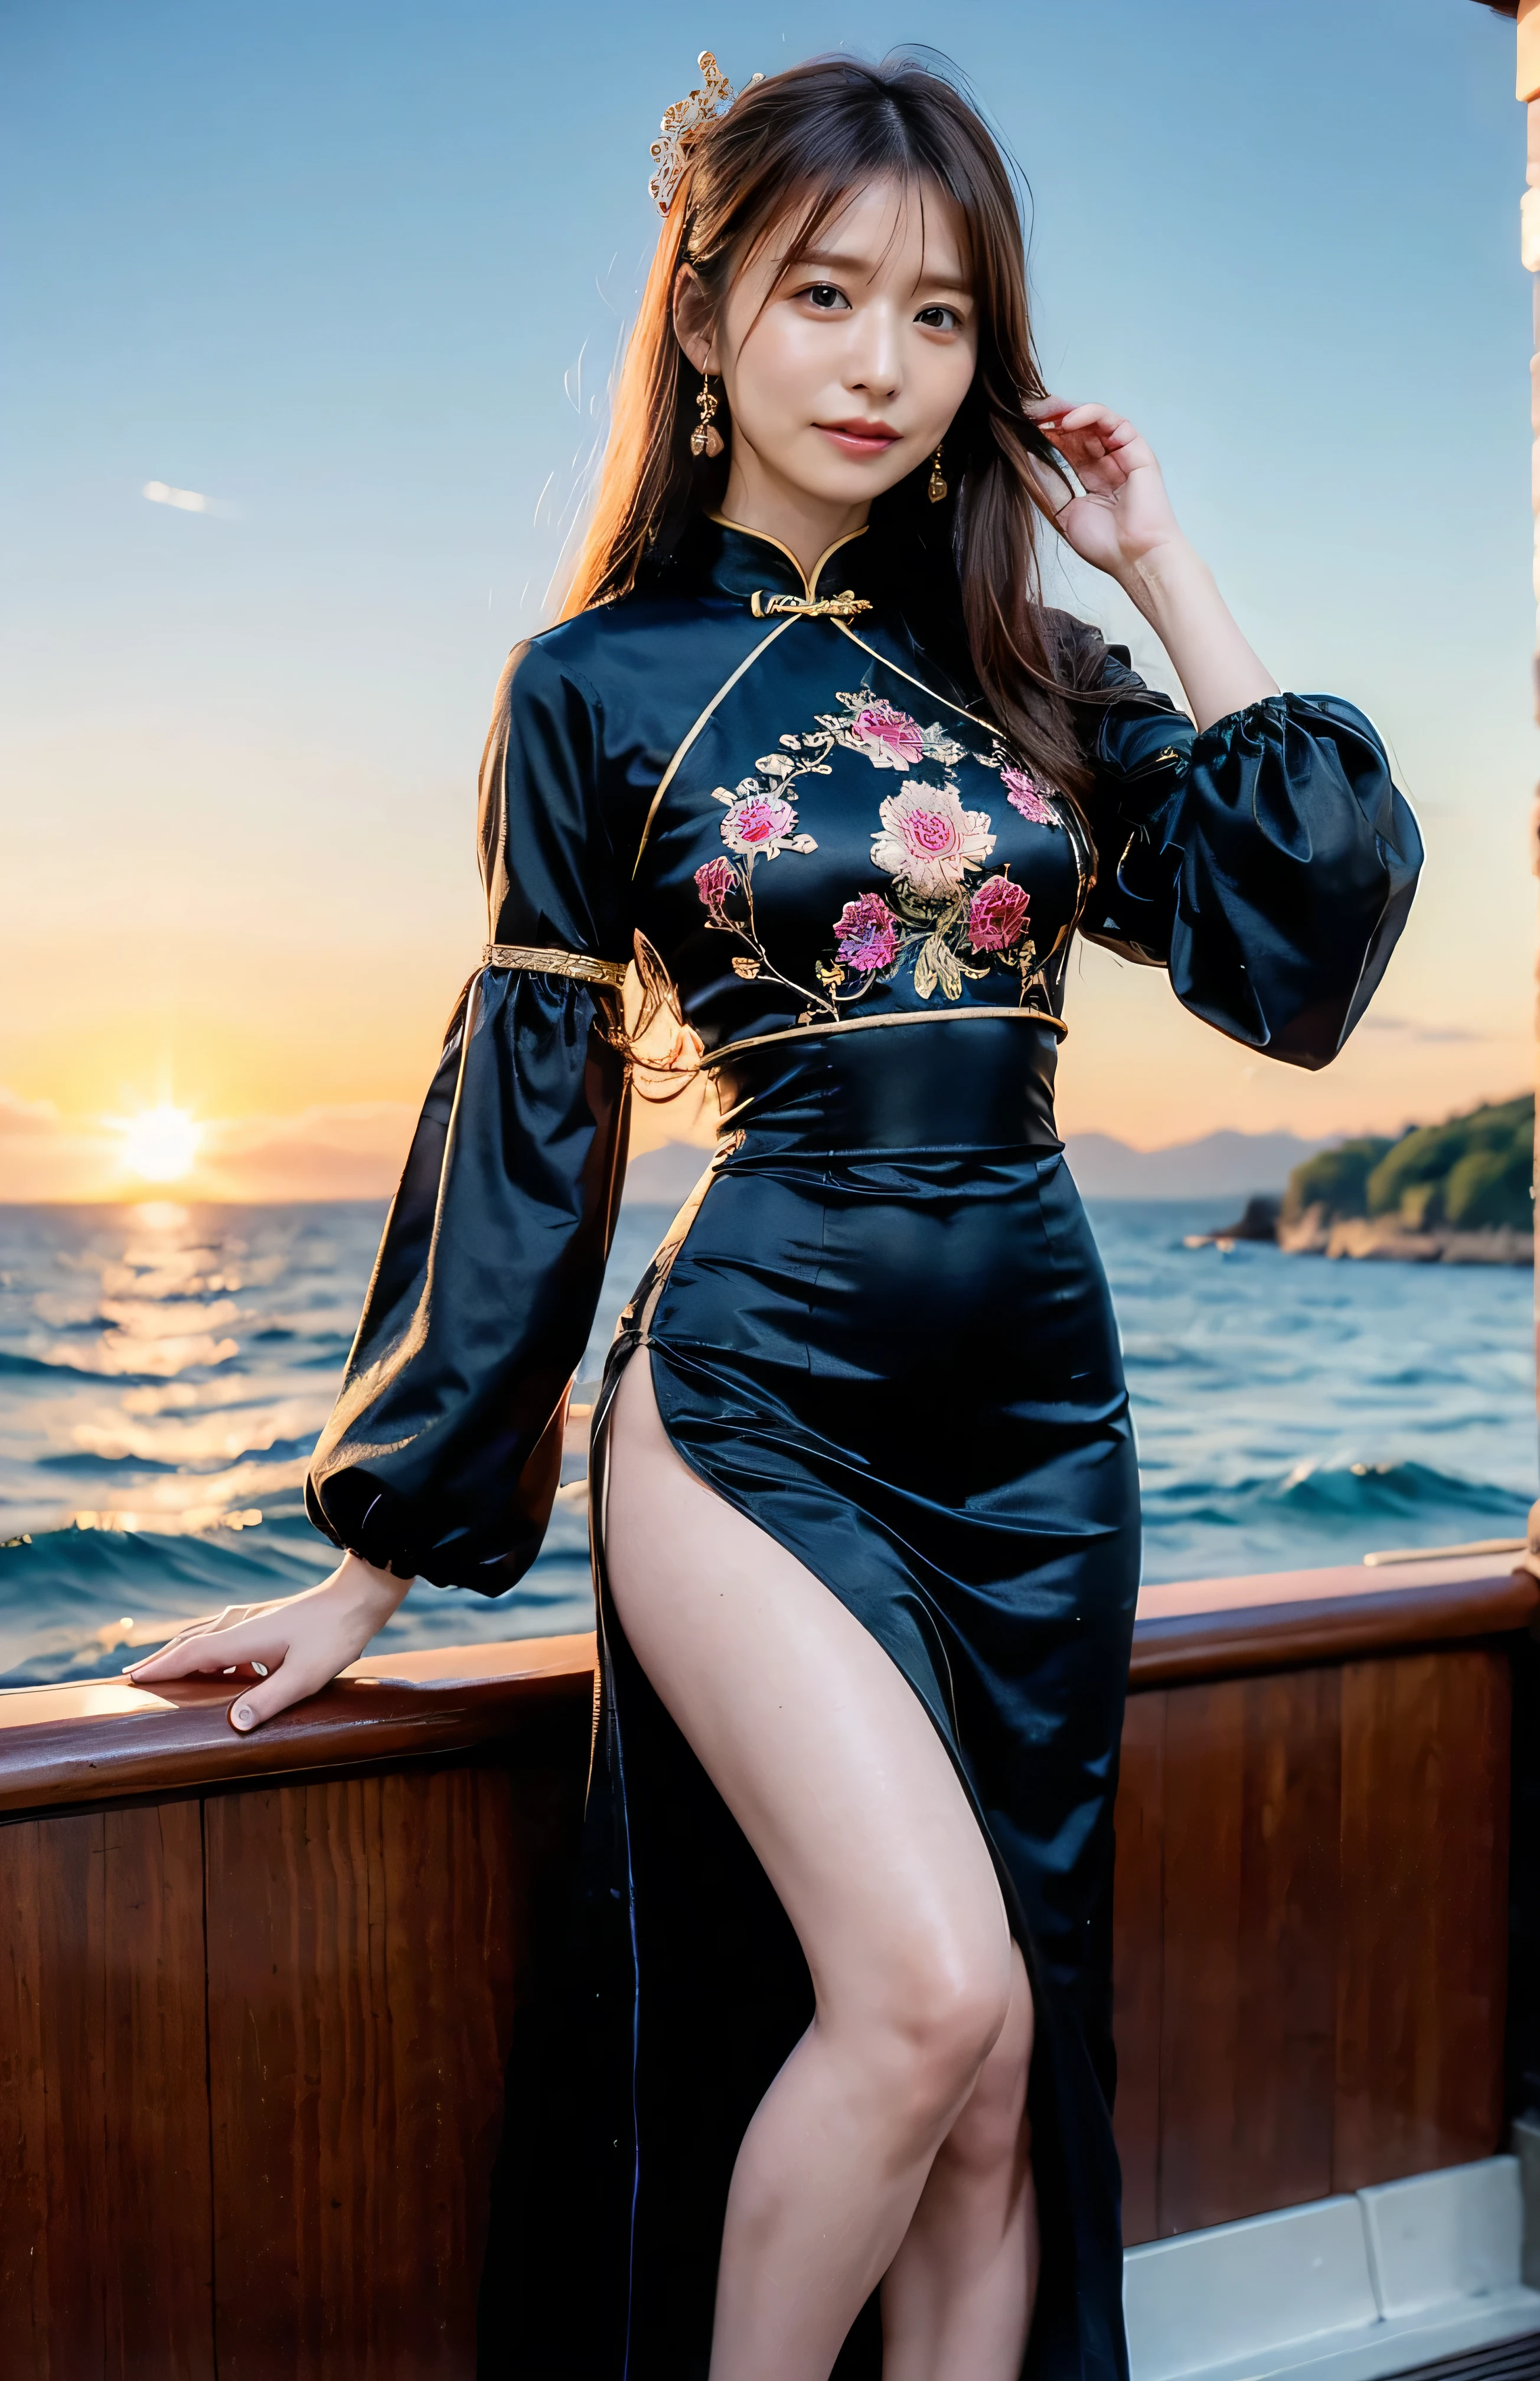 le ciel devient rouge、La Chine la nuit、((ornements de cheveux:1.5)).Une magnifique robe chinoise brodée d&#39;or、ornements de cheveux、Attachez vos cheveux avec élégance、Magnifique cheongsam en soie、((Debout sur un bateau et posant sexy、Robe chinoise noire luxueuse et brillante avec jupe longue brodée:1.4)).Un cheongsam en soie luxueux et brillant、Cheongsam luxueux noir avec broderie、Femme debout sur un bateau、Des cheveux châtain clairs、coiffure élégante、femme aux yeux bleus、Une femme avec un joli regard vers le haut、Quand le ciel s&#39;assombrit、La douce lumière du navire brille、le ciel devient rouge as the sun sets、Des vêtements serrés qui montrent les lignes de votre corps、、Maille d&#39;été élégante bleu marine、Pull d&#39;été noir élégant、jupe courte、Habillez-vous avec élégance着こなす、Bagedium Shorthair de luxe:1.4））、Gratte-ciel vus de l’autre côté de la mer、L&#39;île de Manhattan est visible au large、Femme sur un bateau touristique、、Le soleil brille sur elle、Des cheveux châtain clairs、Des cheveux châtain clairs、Le ciel était teint en rouge、Il y a des nuages、privé's cute、Une femme élégamment habillée est assise sur un bateau et regarde le coucher du soleil、Ses seins généreux sont évidents même à travers ses vêtements..、The shining sun is so Beau、Le crépuscule approche、reflet、Je peux voir le coucher du soleil、（（La lumière du soleil se reflète sur l&#39;océan、vue sur l&#39;océan、Le soleil brille sur la mer、&#39;Beau.、Small earAnneaus、privé&#39;soirée、Les oiseaux volent aussi、、couleur de cheveux bruns、Attacher les cheveux、La femme est à droite:1.4））、Ceintures en cuir de luxe、vêtements brillants、Couleur de cheveux beige clair、flou d&#39;arrière-plan、Tressez uniquement les cheveux de devant、Des cheveux châtain clairs、｛｛Tir de cow-girl｝｝、（（Gros plan à partir de la taille、seins amples:1.4））、sourire、Vêtements en soie、seins amples that can be seen even through clothes、Tressez uniquement les cheveux de devant、tir de cow-boy、Superbe chemise en soie à col blanc et jupe marron、Habillez-vous avec élégance、Sacs de luxe、A lovely sourire、（（seins amples））、Photo du corps entier、Anneau、jupe courte、Rentrez vos cheveux derrière une oreille、Collier en argent、sourire、 Queue de cheval élégante、Caustiques、Des photos très détaillées、Very Beau and ideal short hair、Super pas de maquillage、(8k、Photos brutes、la plus haute qualité、chef-d&#39;œuvre:1.2)、(réaliste、réaliste)、1 fille、((cheveux mi-courts、regarder la caméra:1.4))、cheveux au vent
